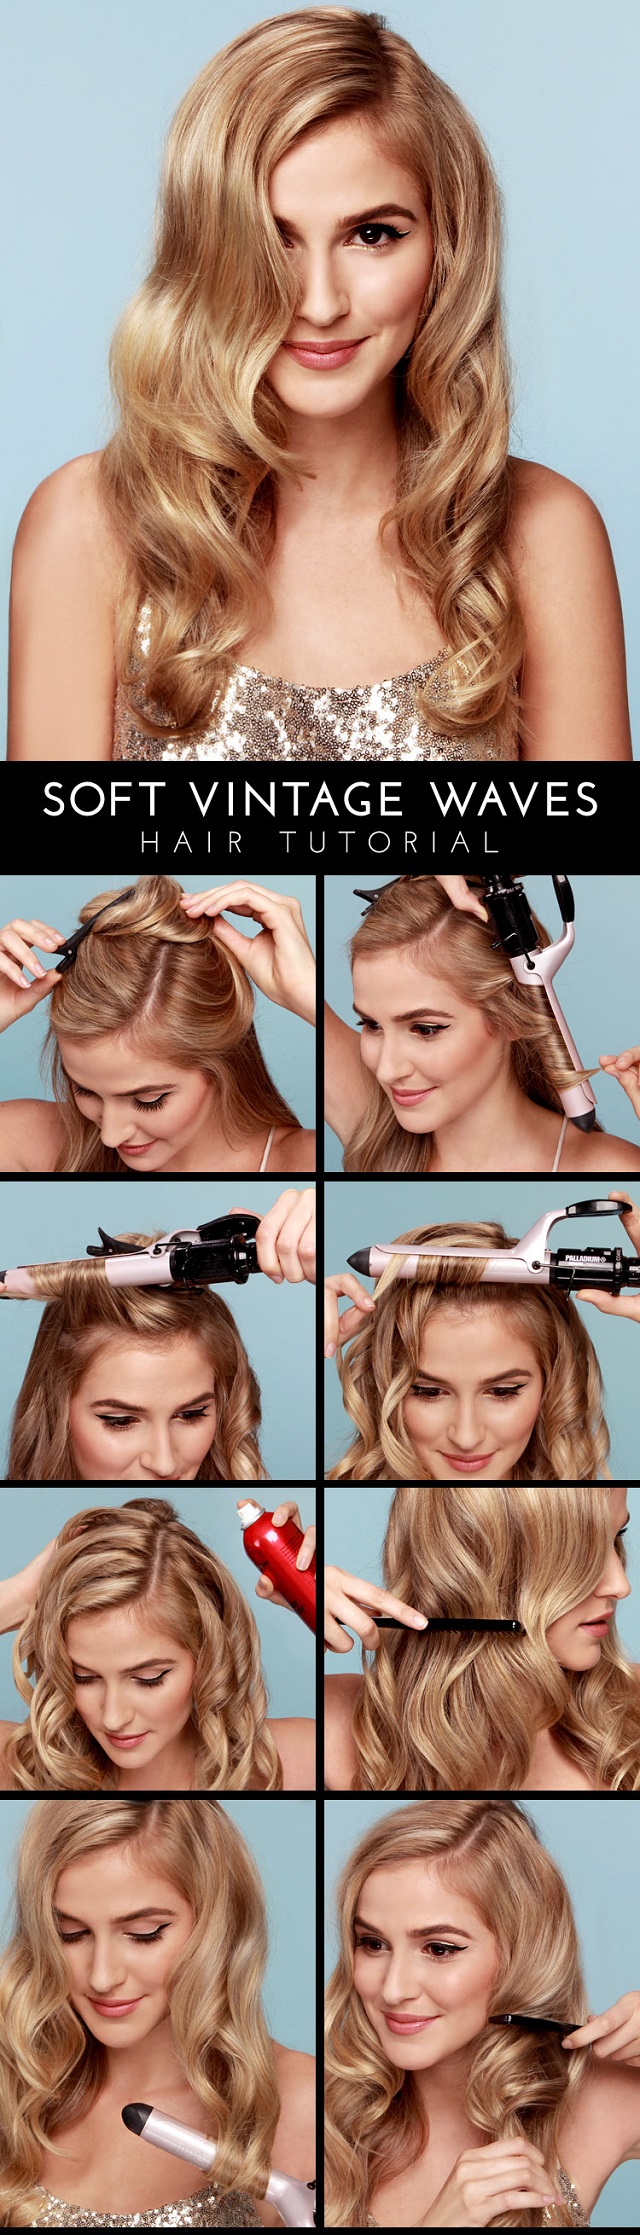 Soft Vintage Waves Hair Tutorial